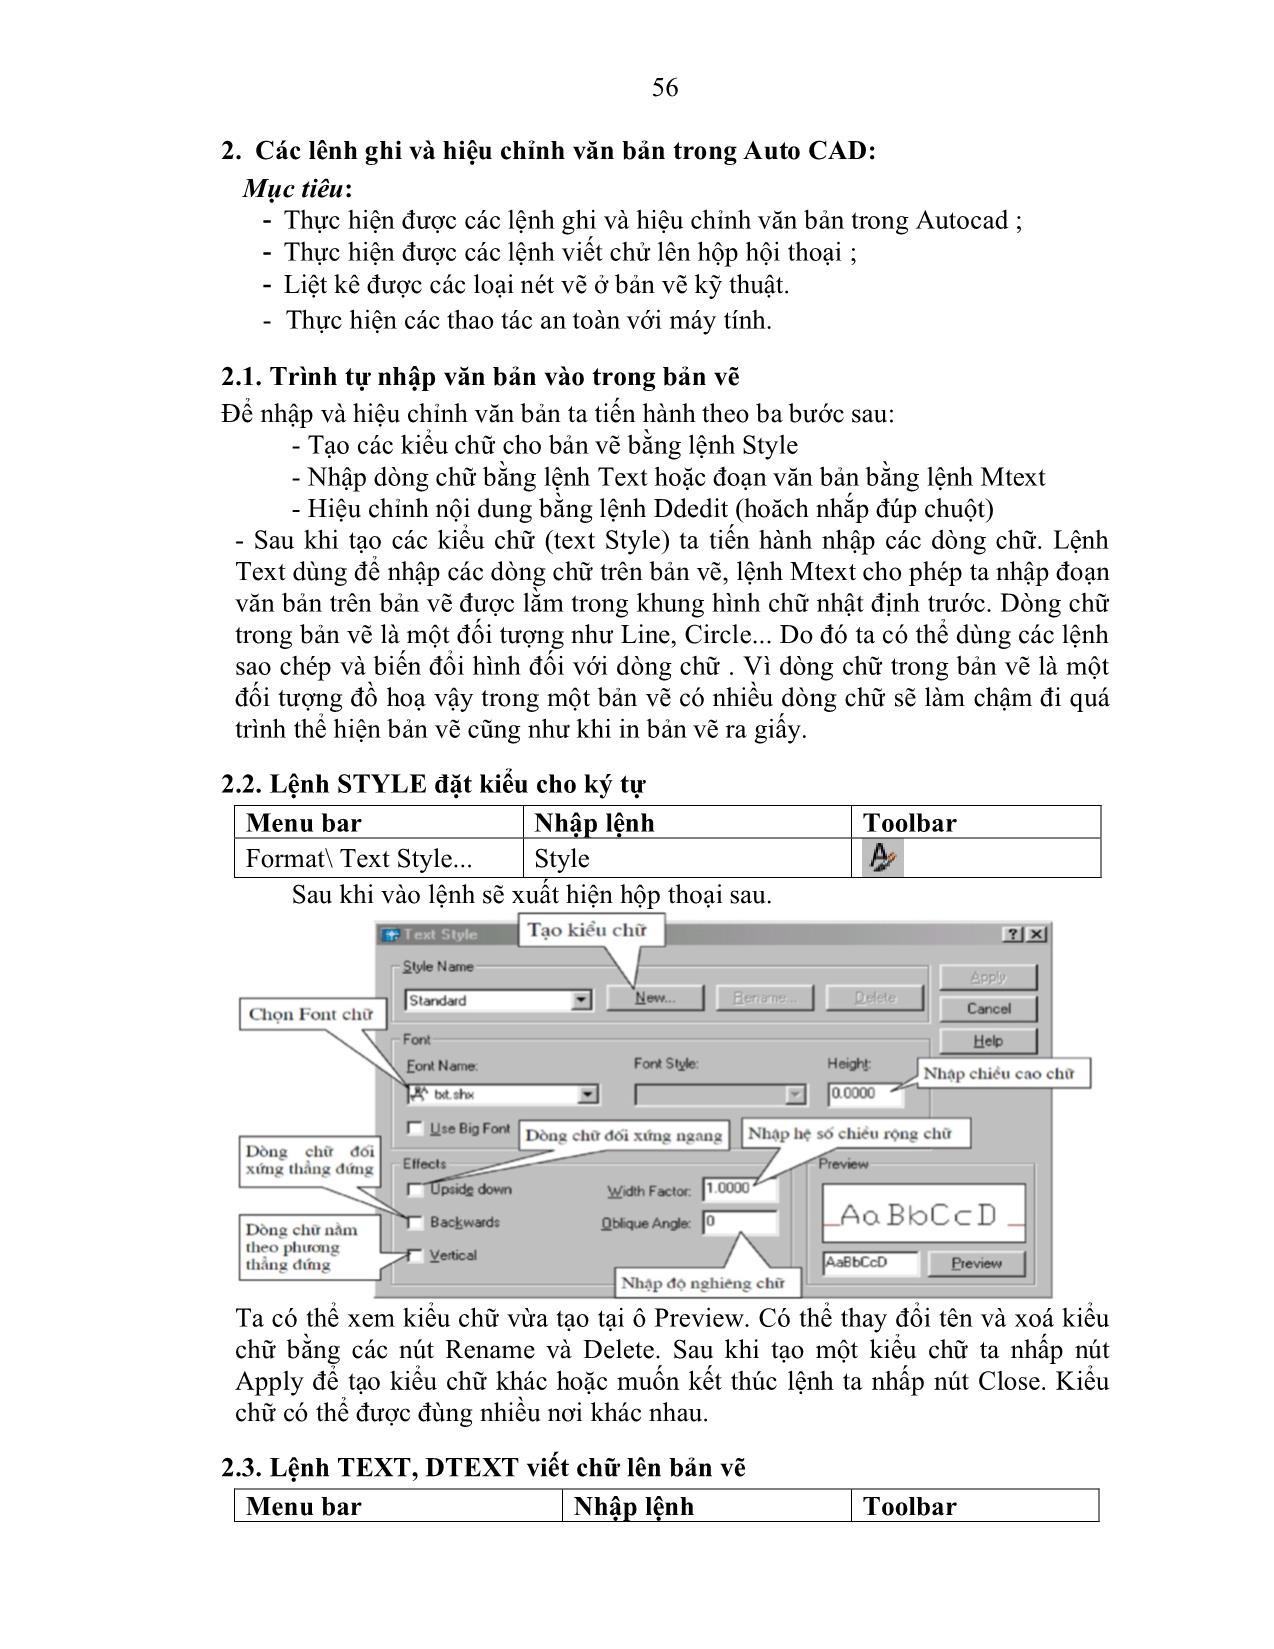 Giáo trình Autocad - Quản trị mạng máy tính (Phần 2) trang 5